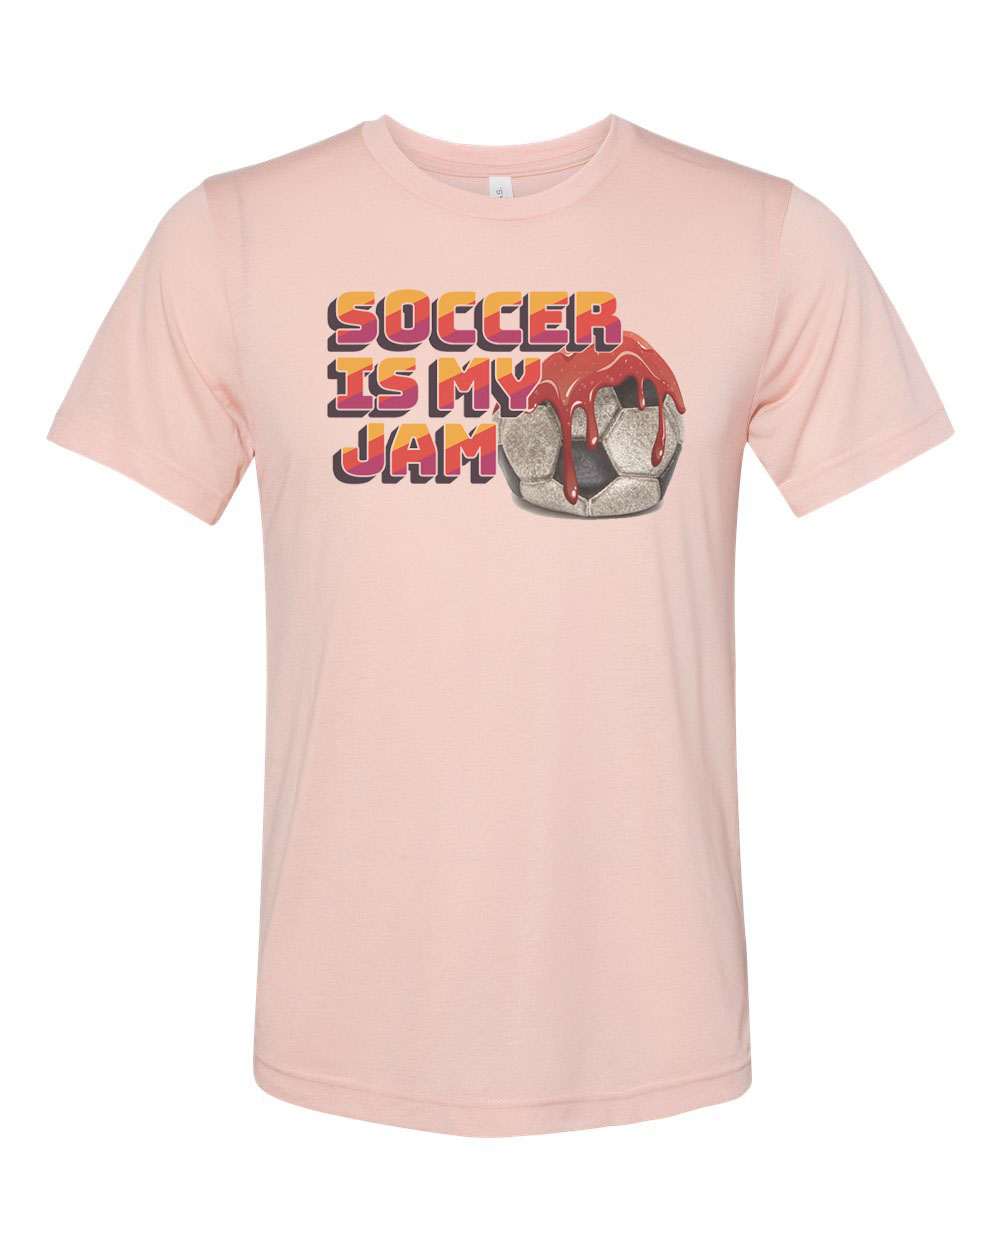 Soccer Shirt, Soccer Is My Jam, Futbol Shirt, Soccer Gift, Futbol T-shirt, Funny Soccer Shirt, Sports Shirt, Athletic, Soccer Lover, Futbol, Peach, MEDIUM - image 1 of 1